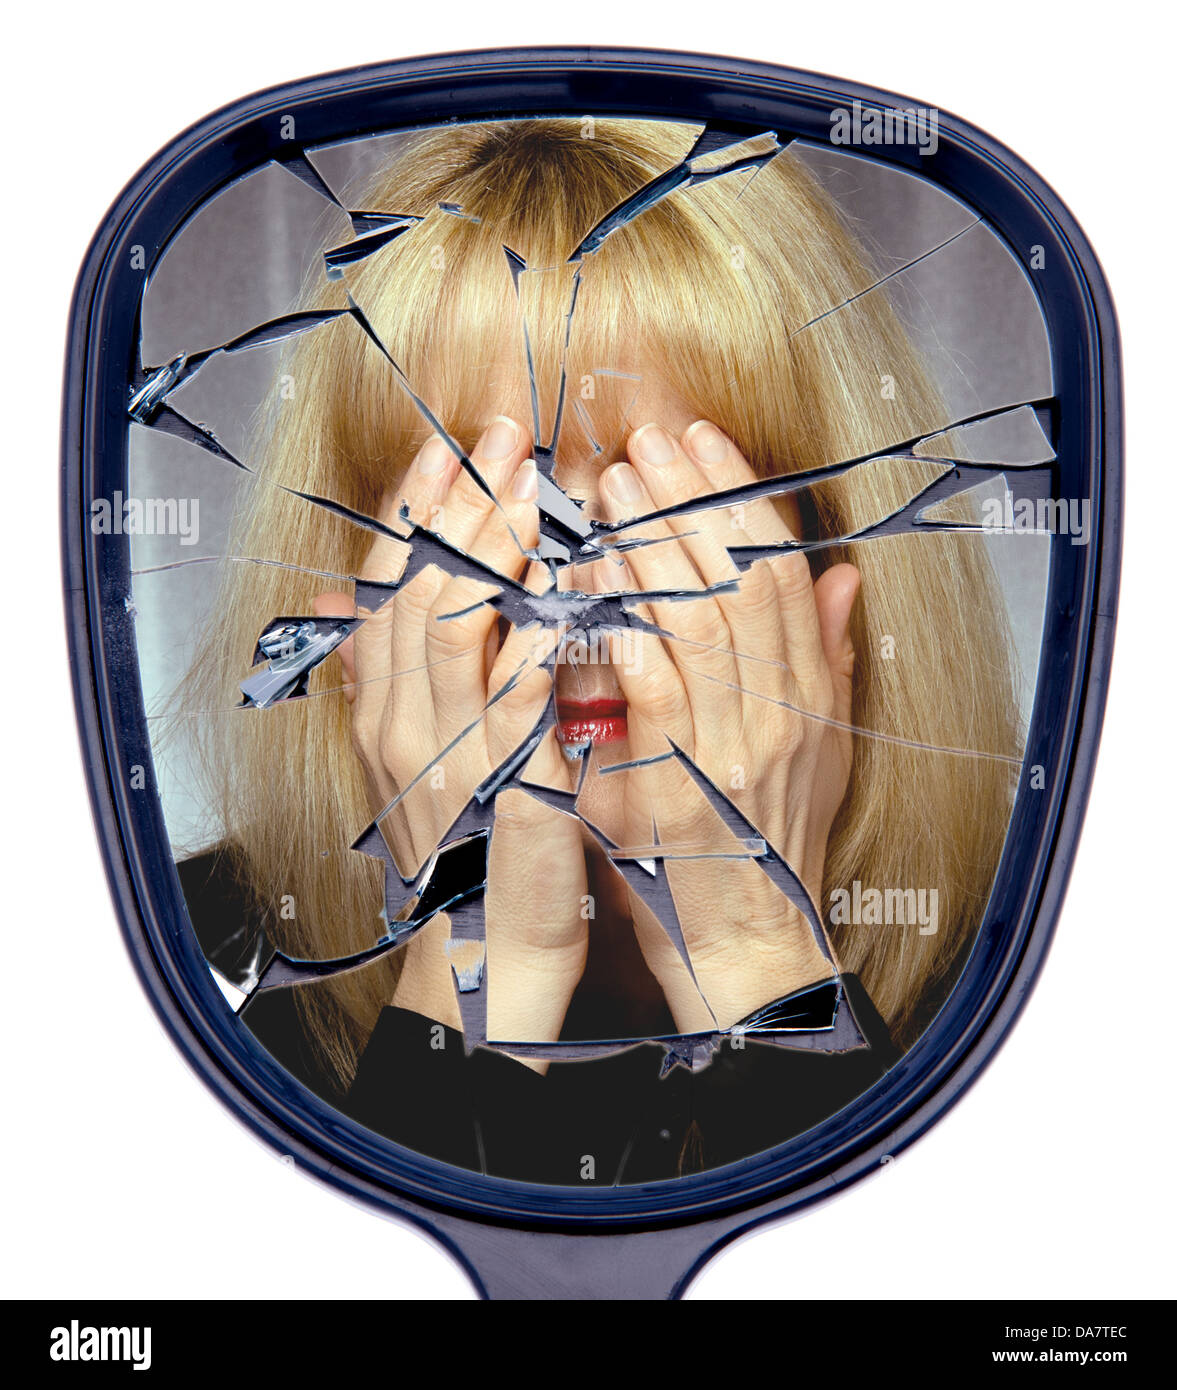 Una mujer cubre su cara reflejada en un espejo roto o el concepto de la vida destrozada Foto de stock